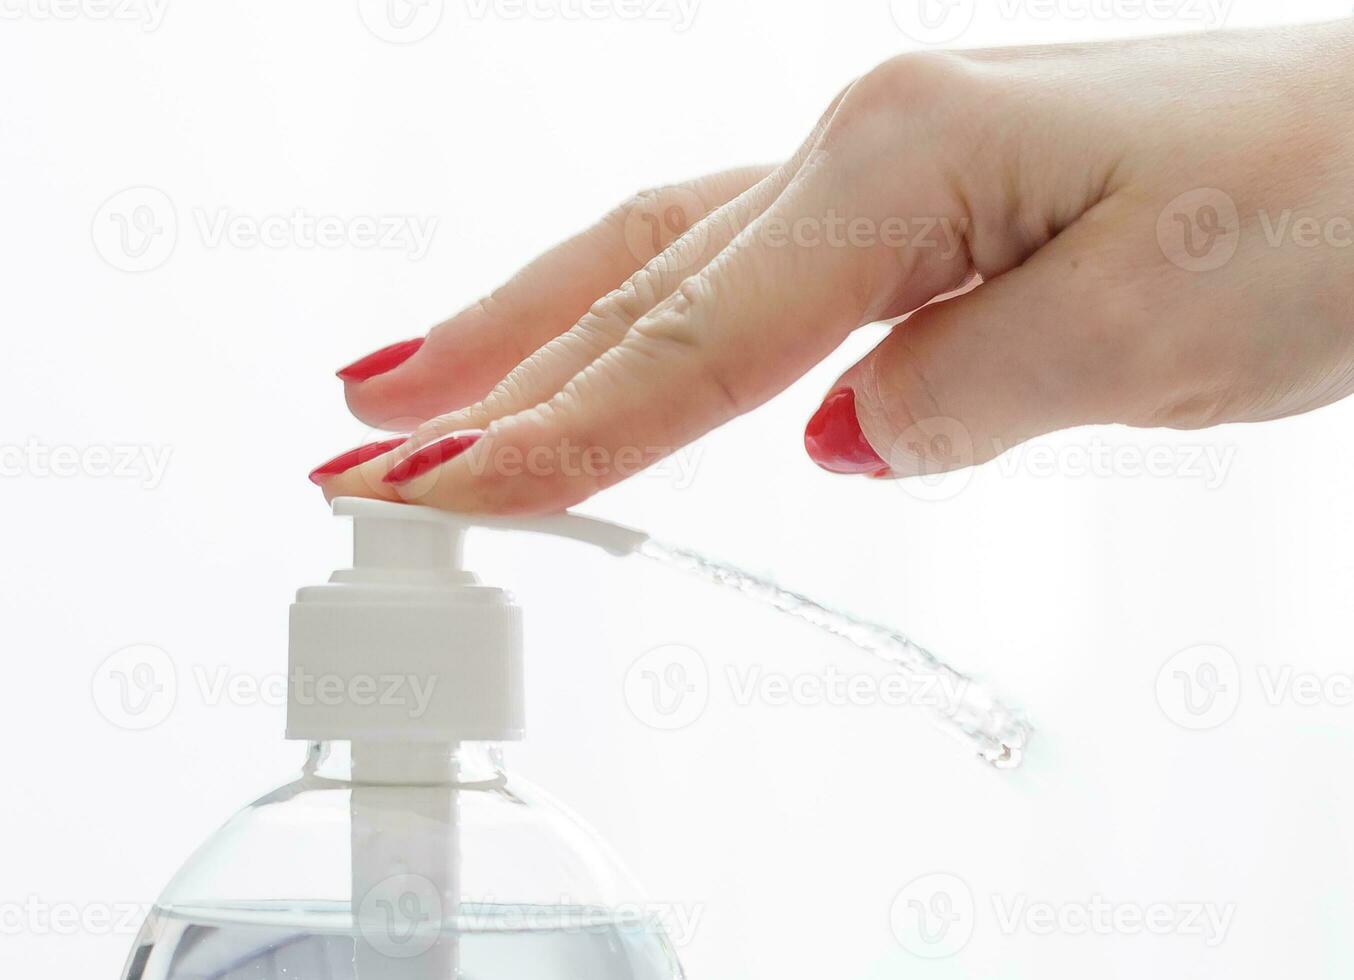 anti bactérien agent bouteille pour main la lessive photo